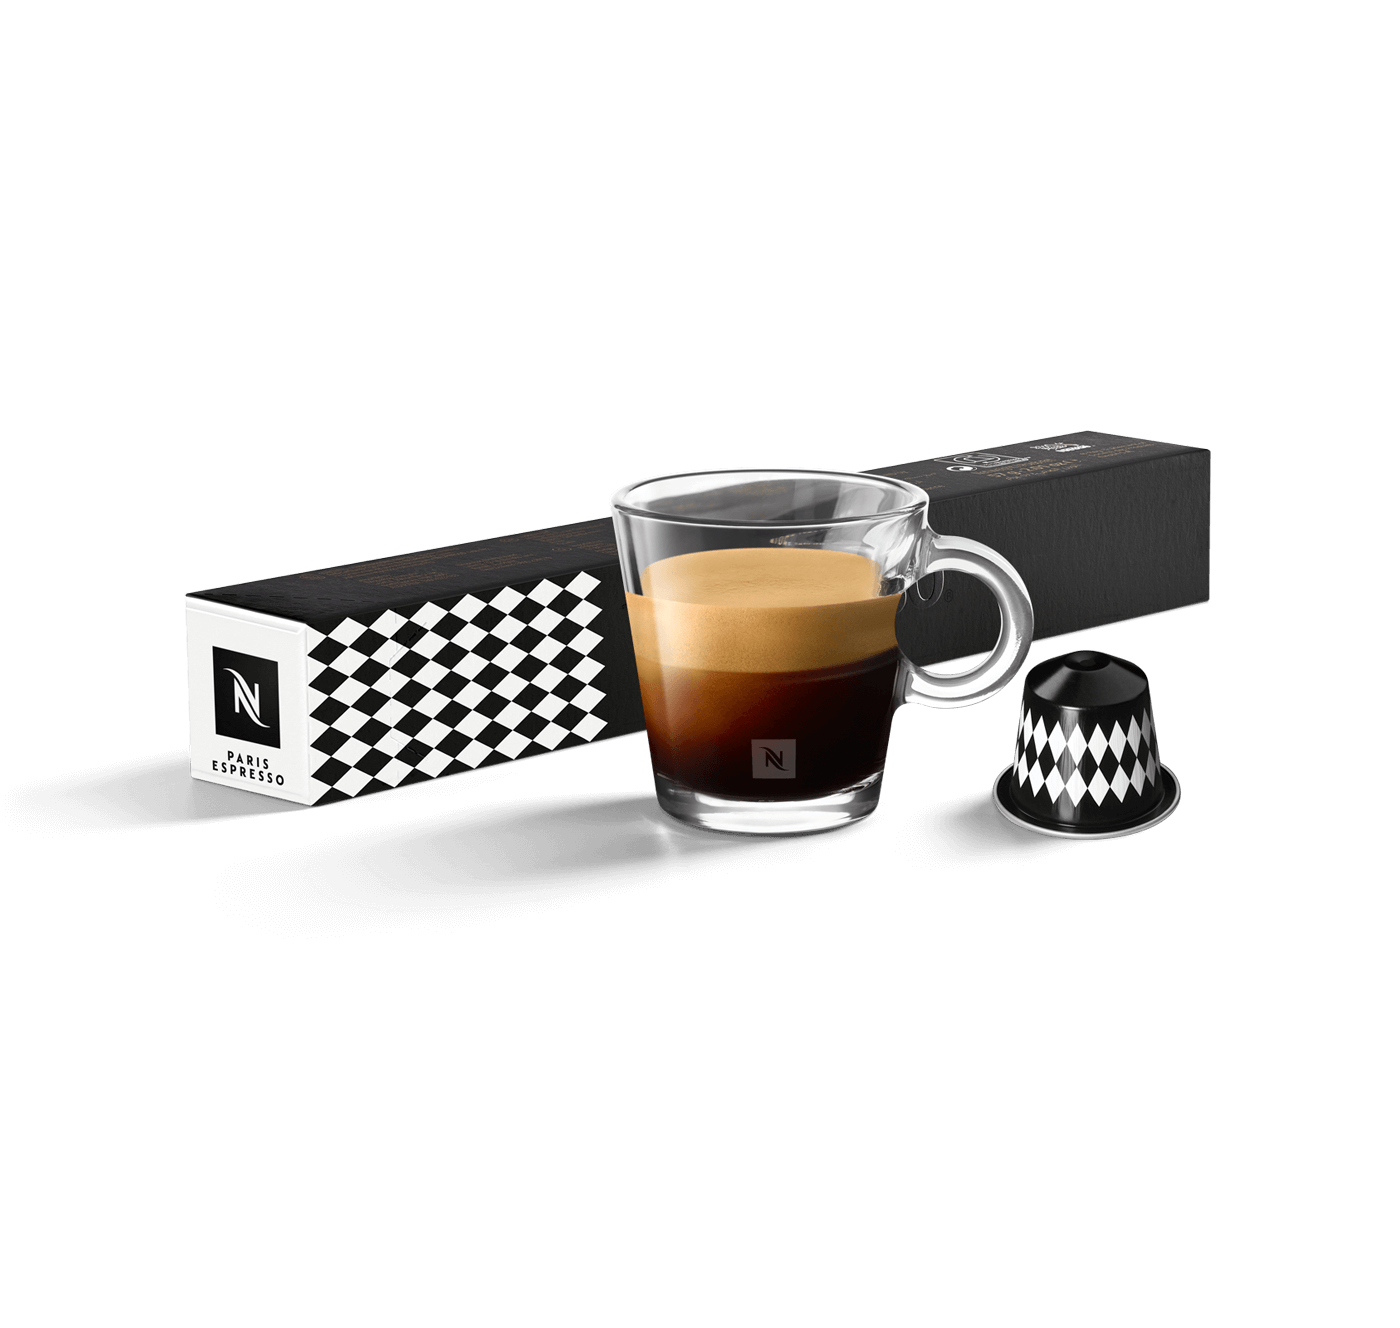 Paris Espresso - 1 sleeve of 10 pods